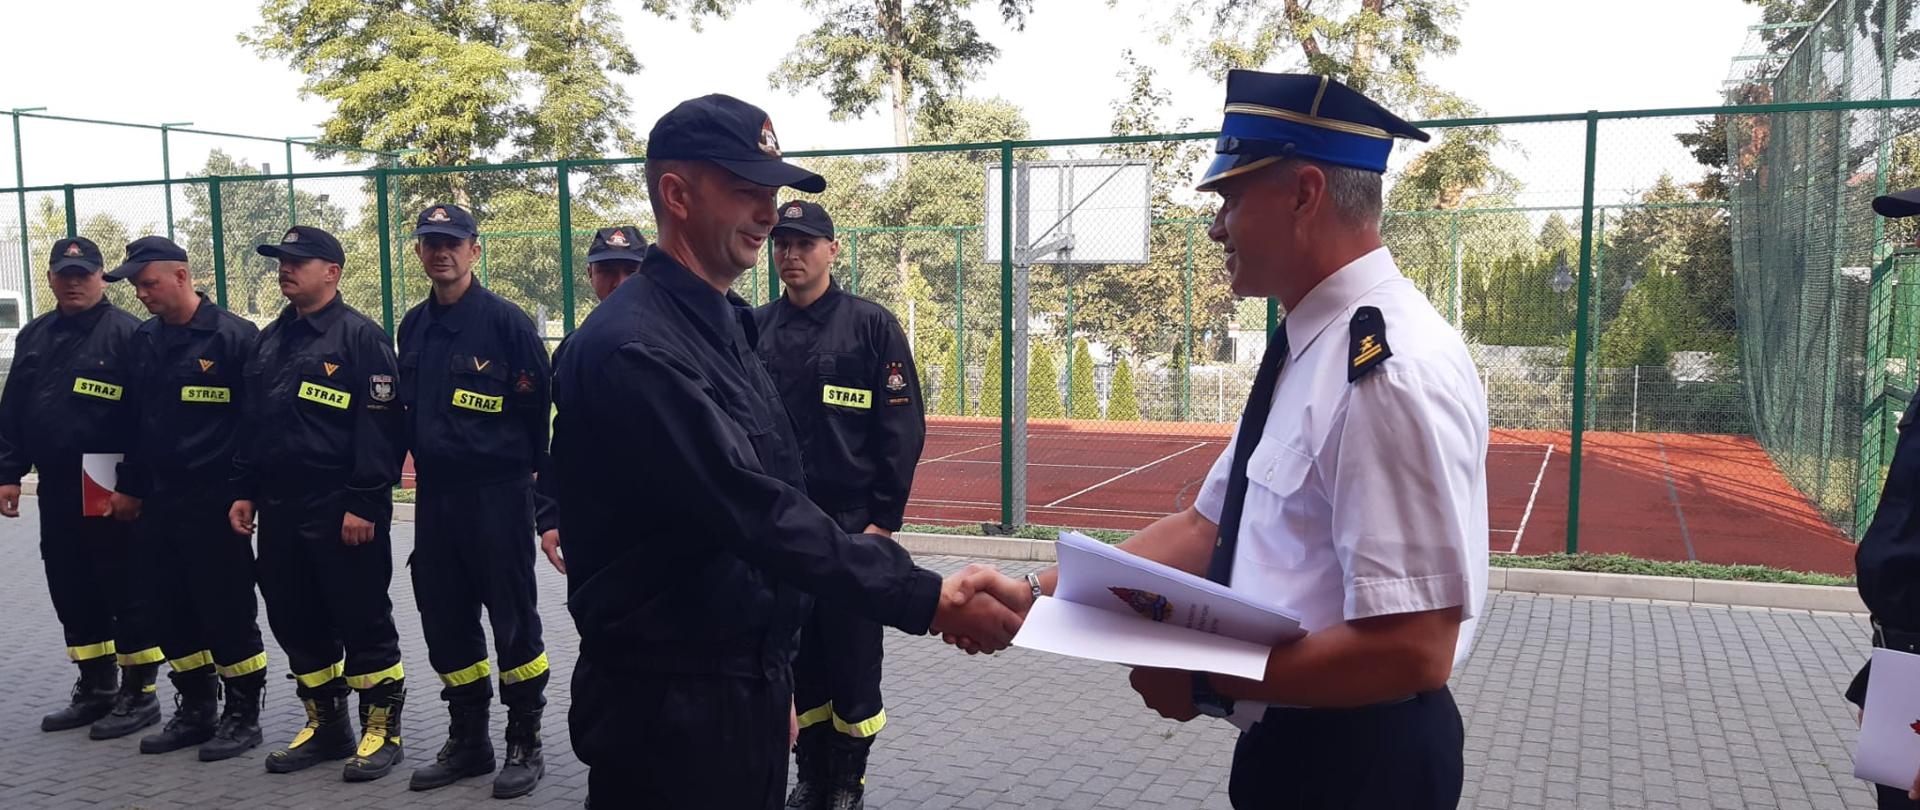 Na pierwszym planie Komendant Powiatowy PSP w Wolsztynie wręcza gratulacje za 20 lat pracy i służby strażakowi wolsztyńskiej Jednostki Ratowniczo-Gaśniczej. Na drugim planie znajdują się ustawieni na zbiórce strażacy.